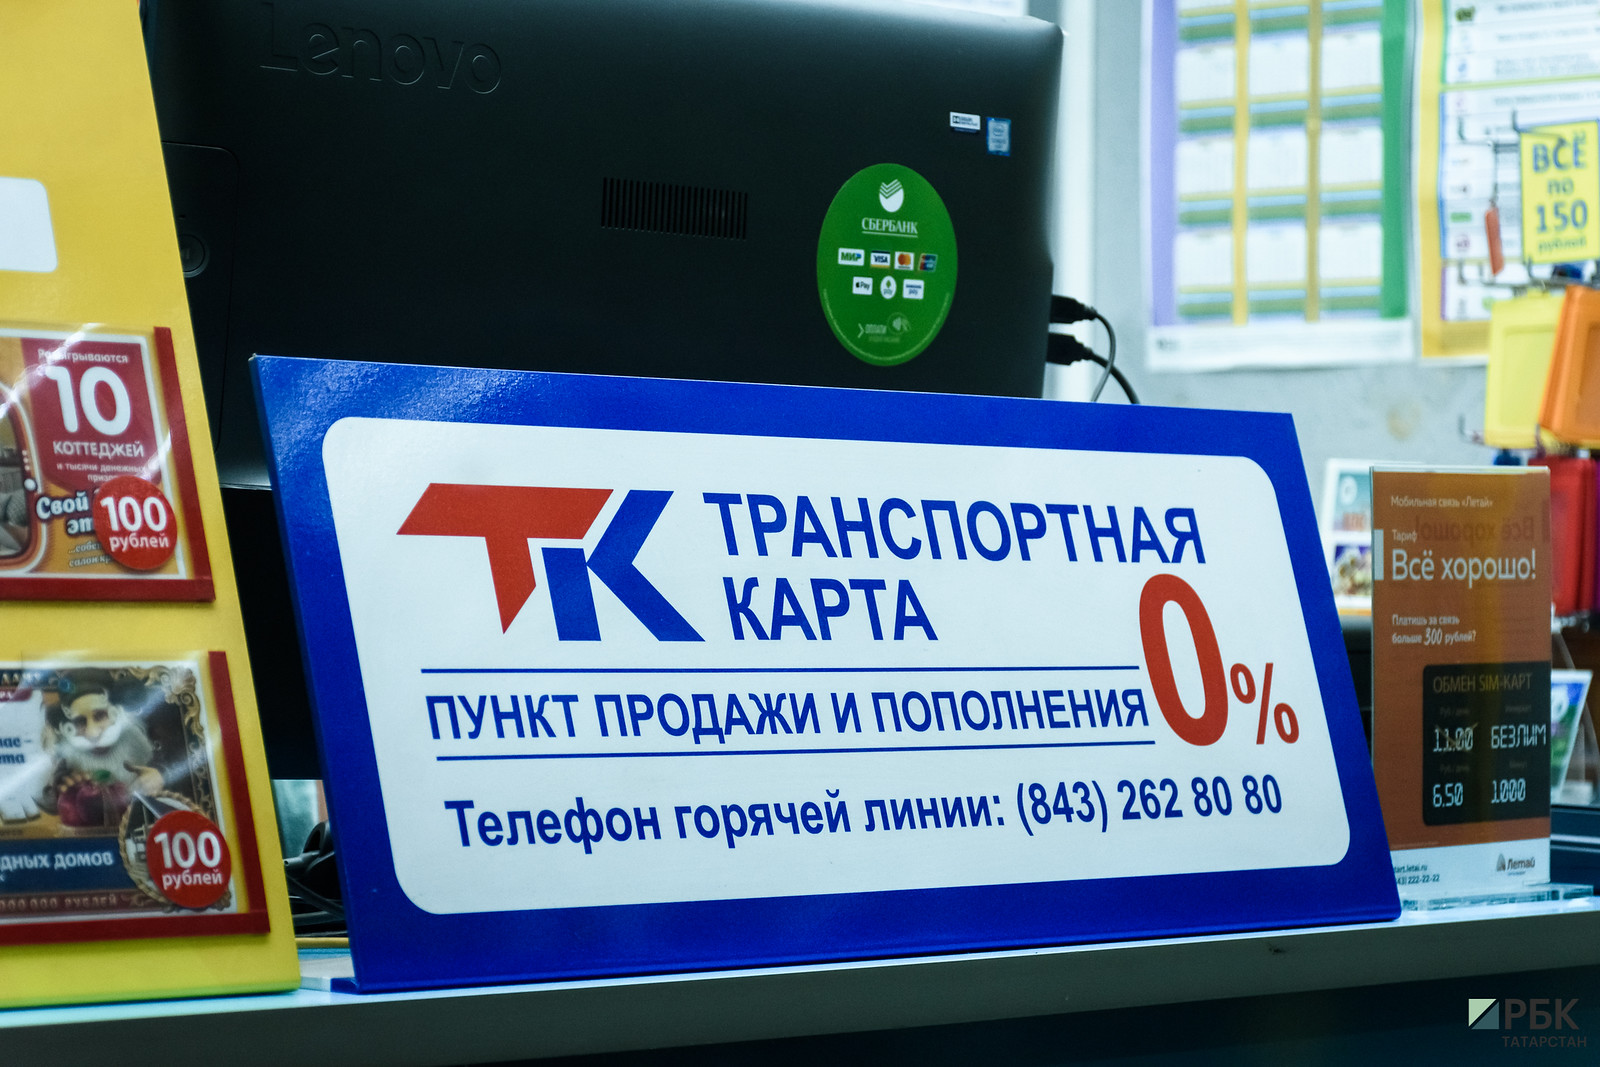 Казань готова к переходу на безналичное пополнение транспортных карт